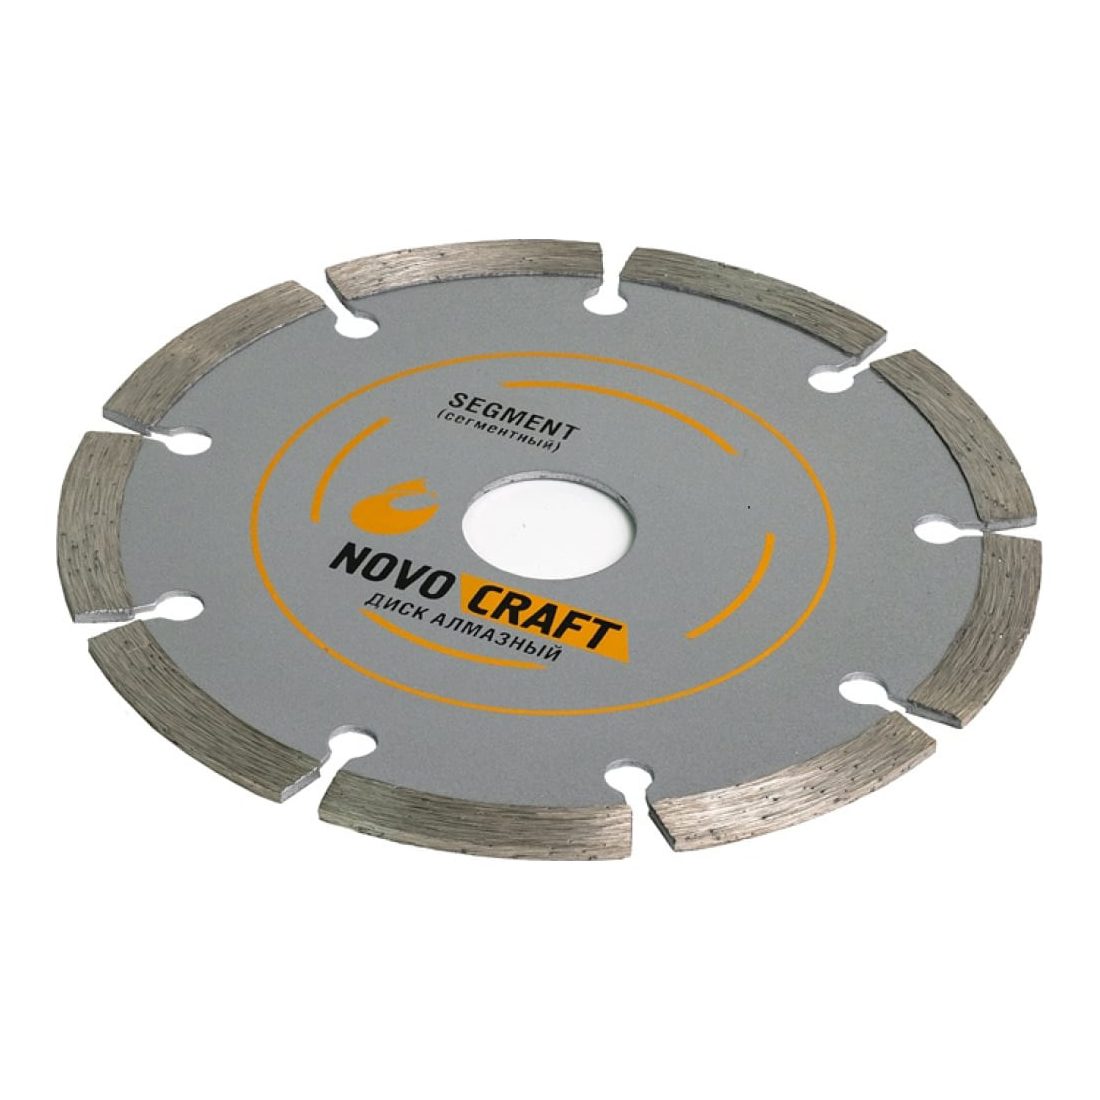 Диск алмазный Novocraft SEGMENT отрезной по бетону 180х22,23х2,4 мм диск отрезной алмазный по бетону курс 37265 230x22 2x2 мм